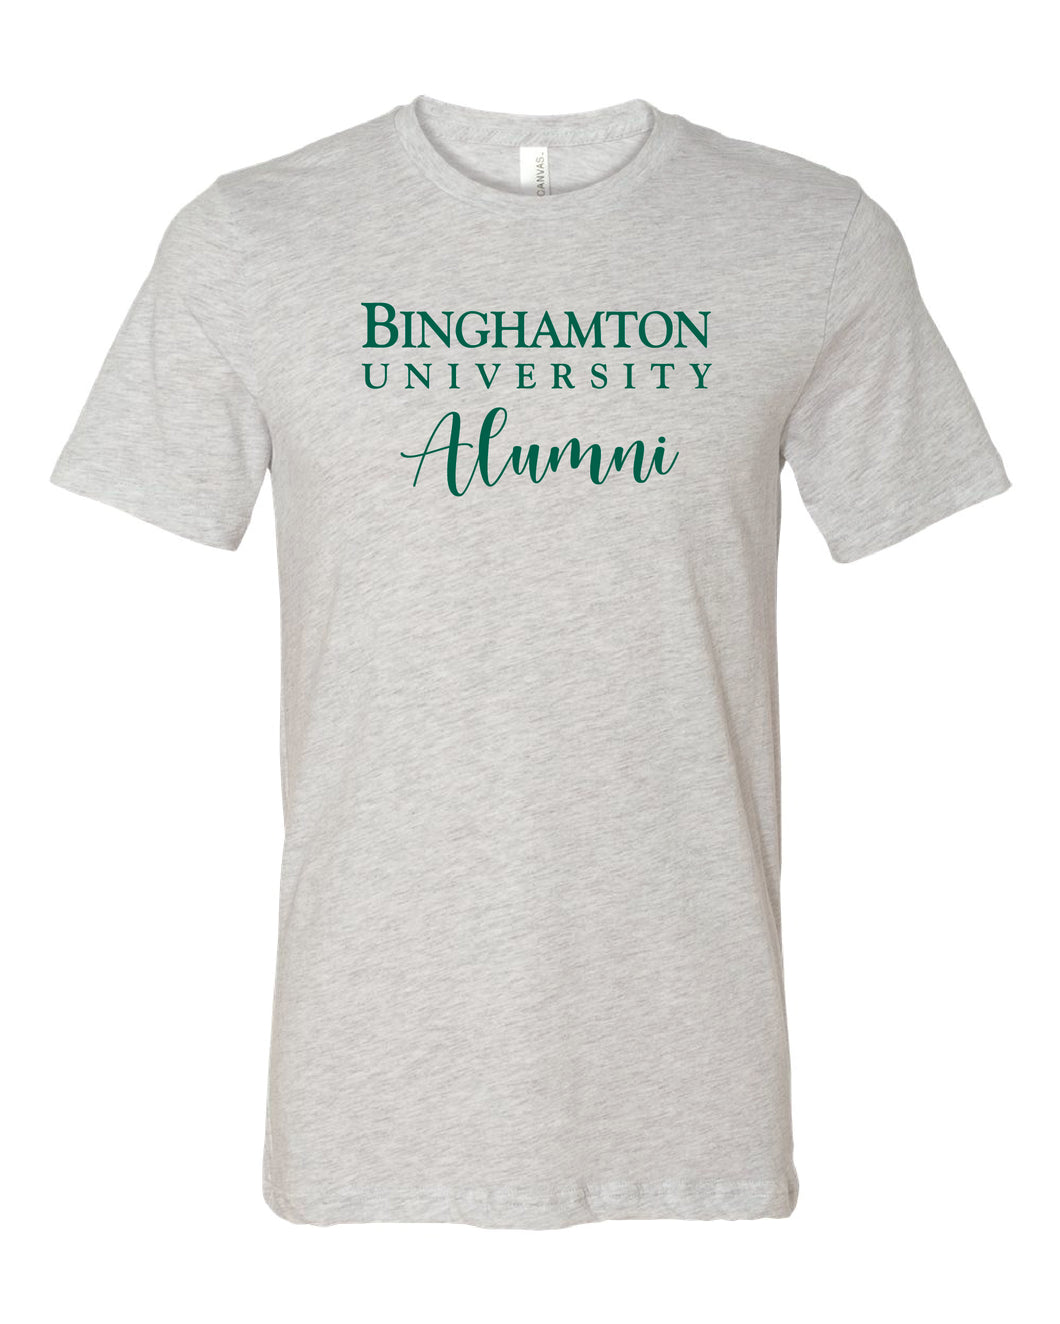 Binghamton University Alumni Tee